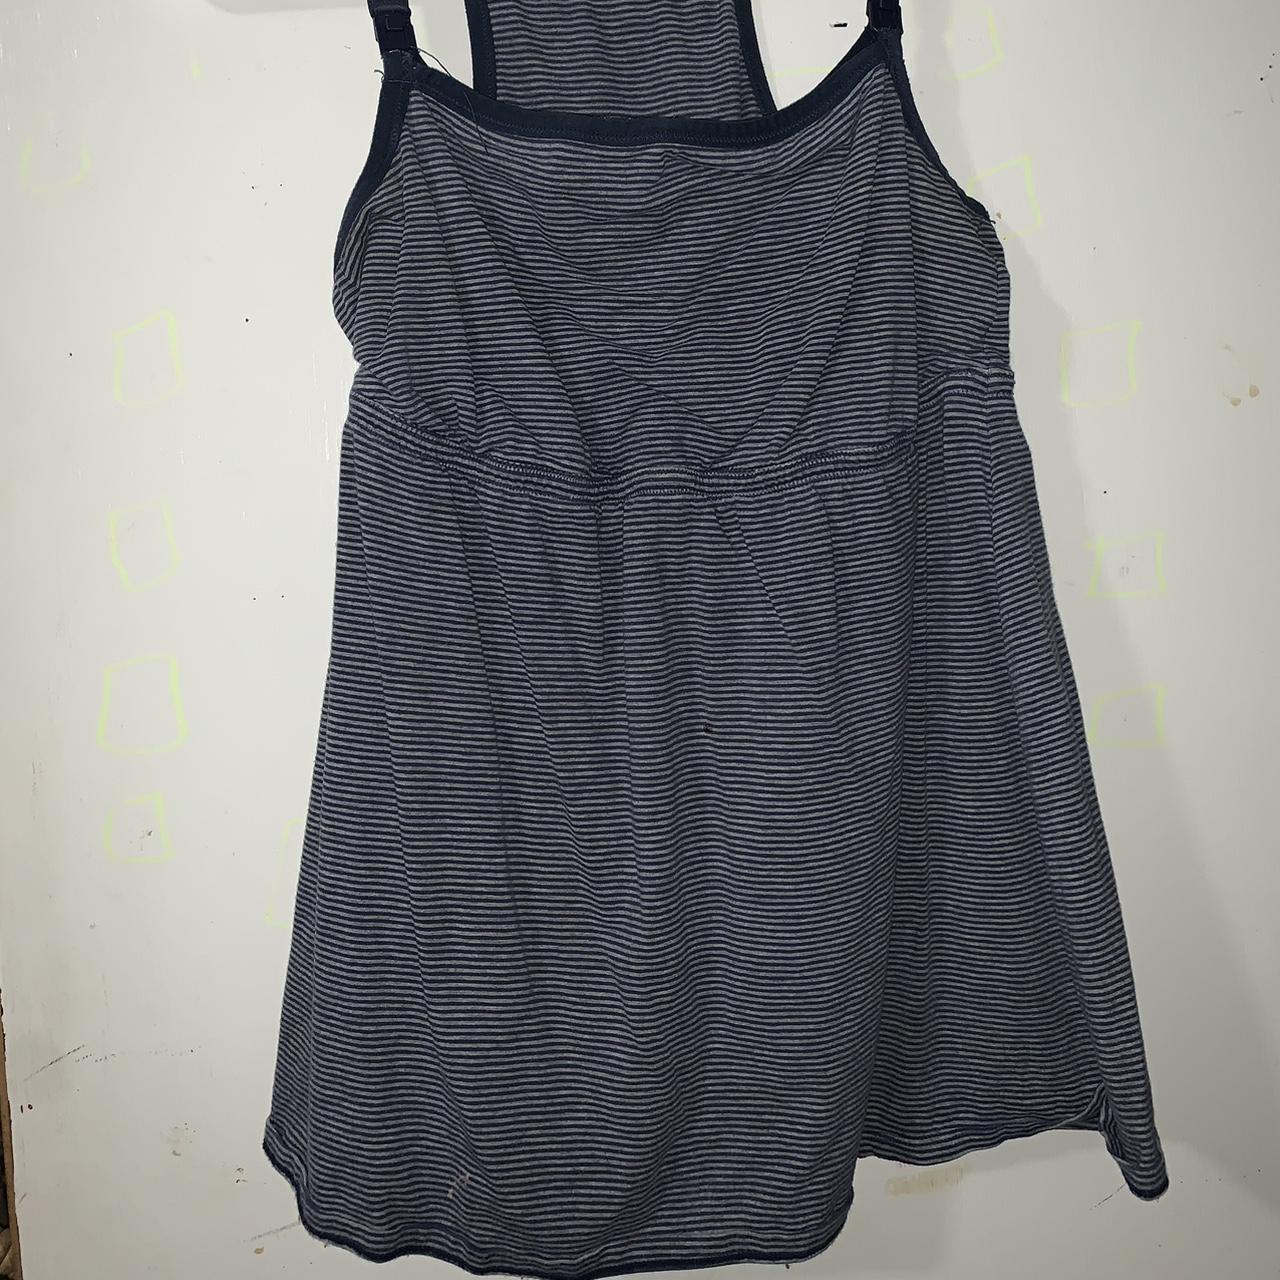 $5-10 Vintage Tops/Dress! Open to trades! Send... - Depop